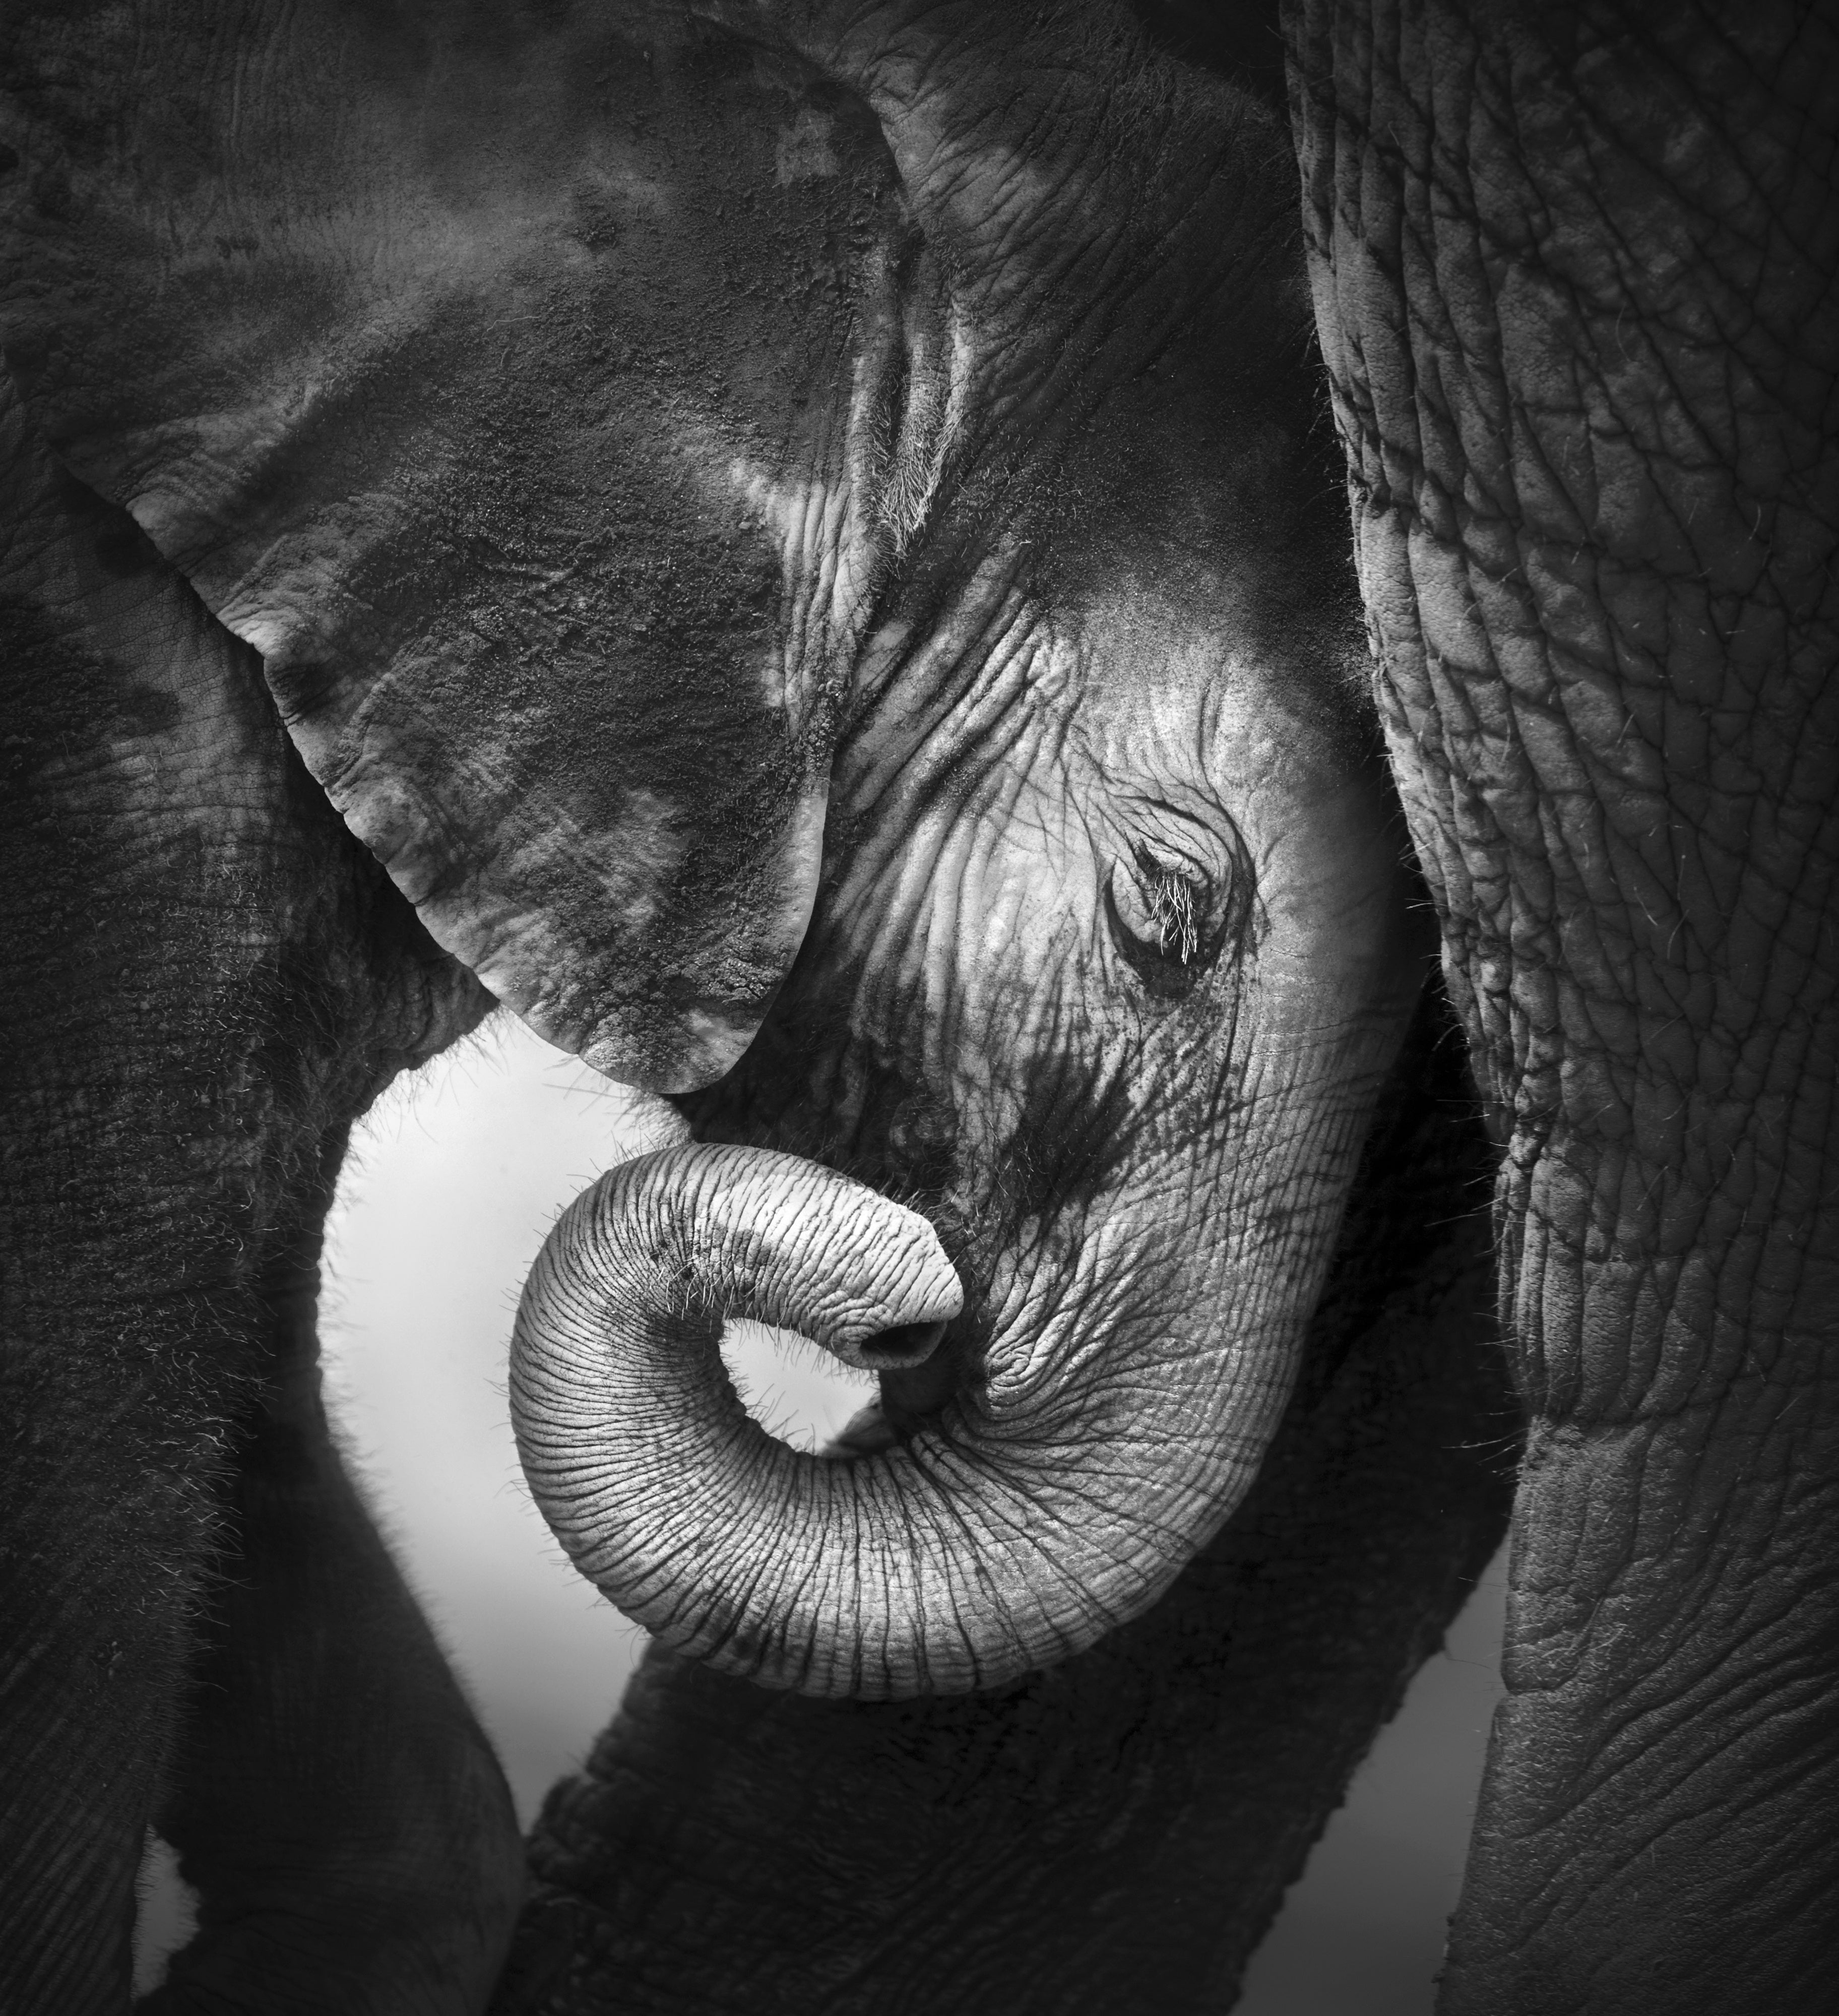 Black and white photo of baby elephant